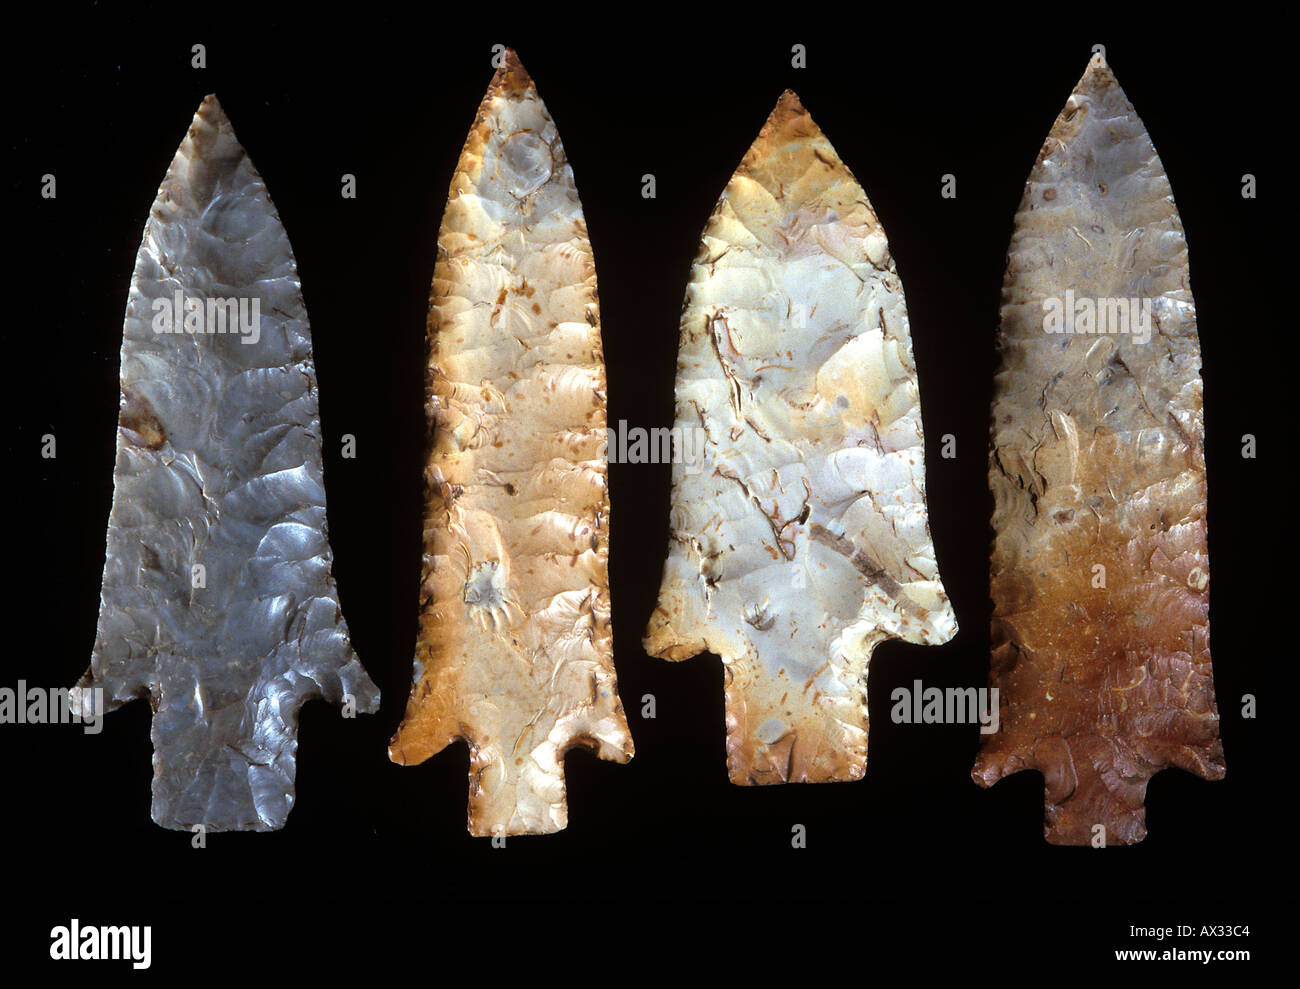 Puntos de lanza, característicamente de puntas de proyectil acanaladas, desde el Periodo Arcaico tardío (4.000 a.C.), que se encuentra cerca de Saint Louis, Missouri Foto de stock